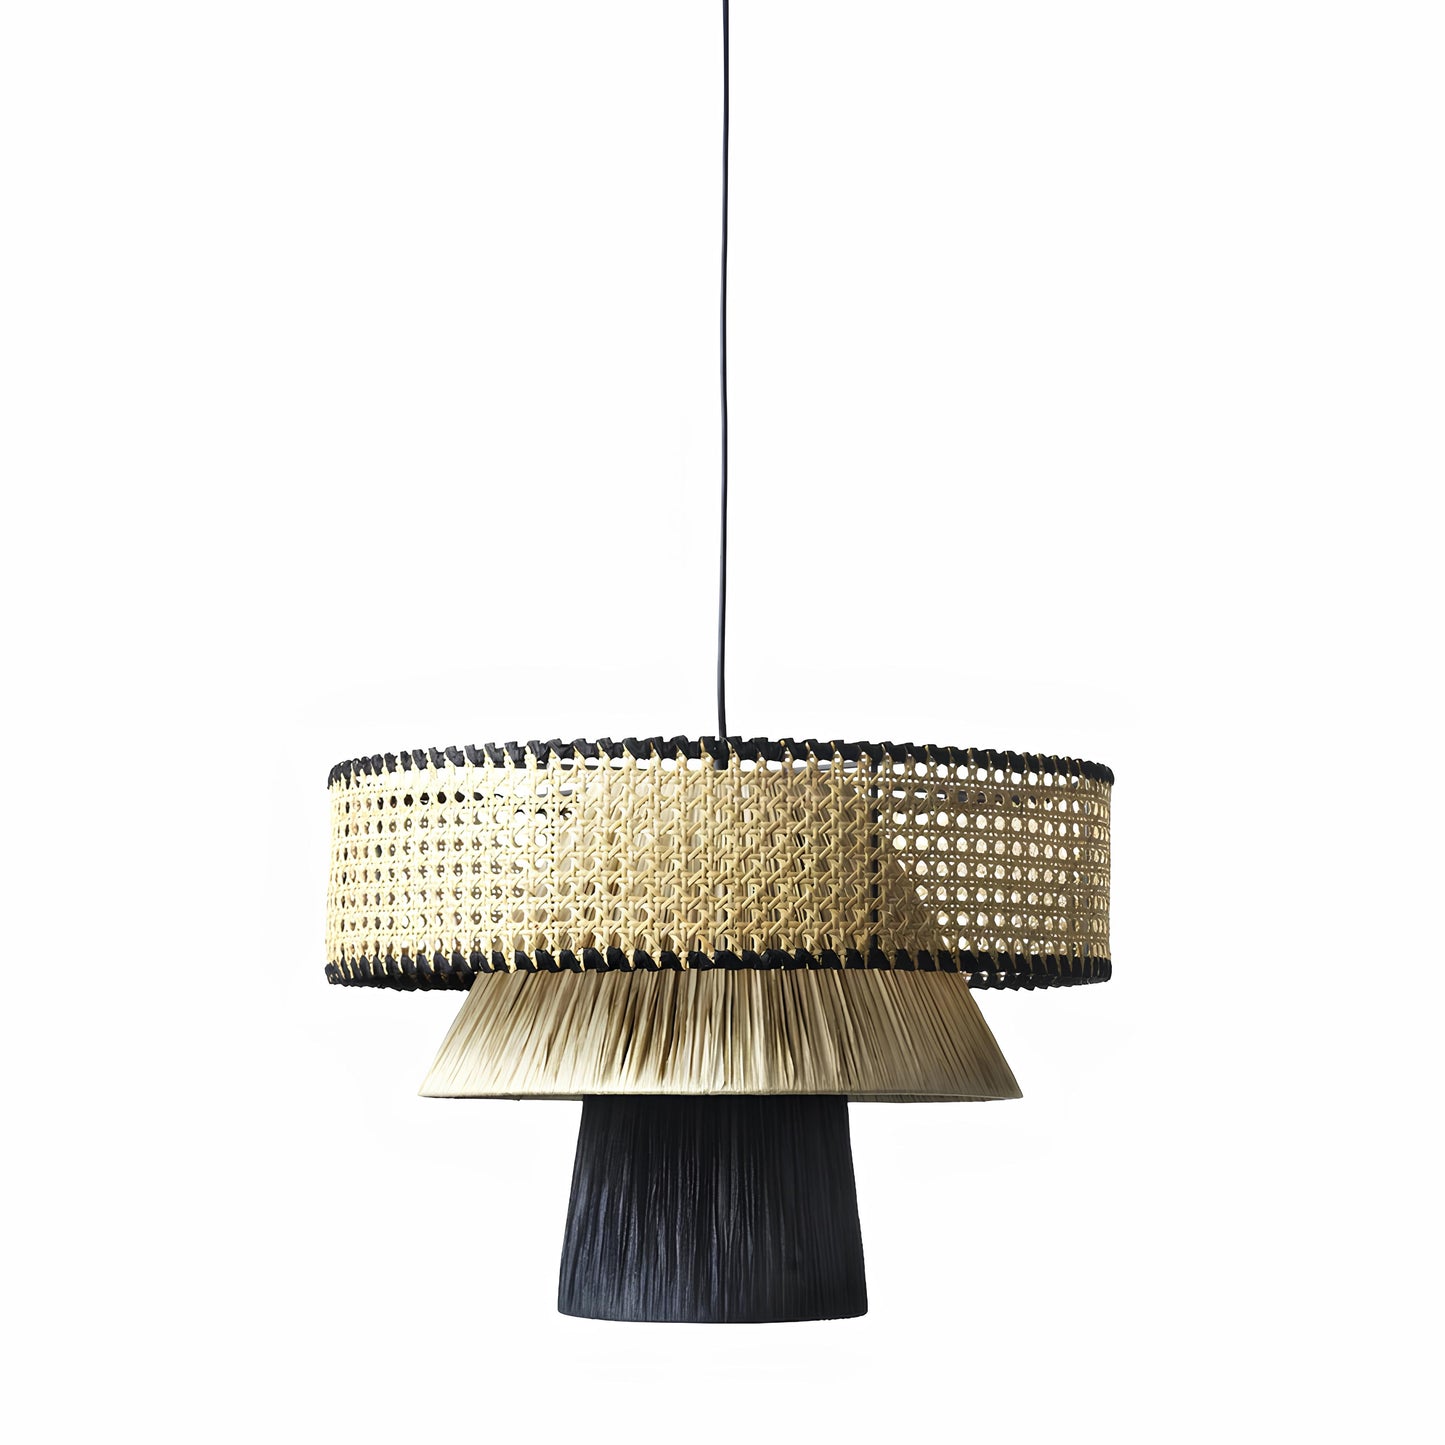 Bamboo Hanging lamp for Living Room | Rattan Pendant light | Cane ceiling light - Diva - Akway